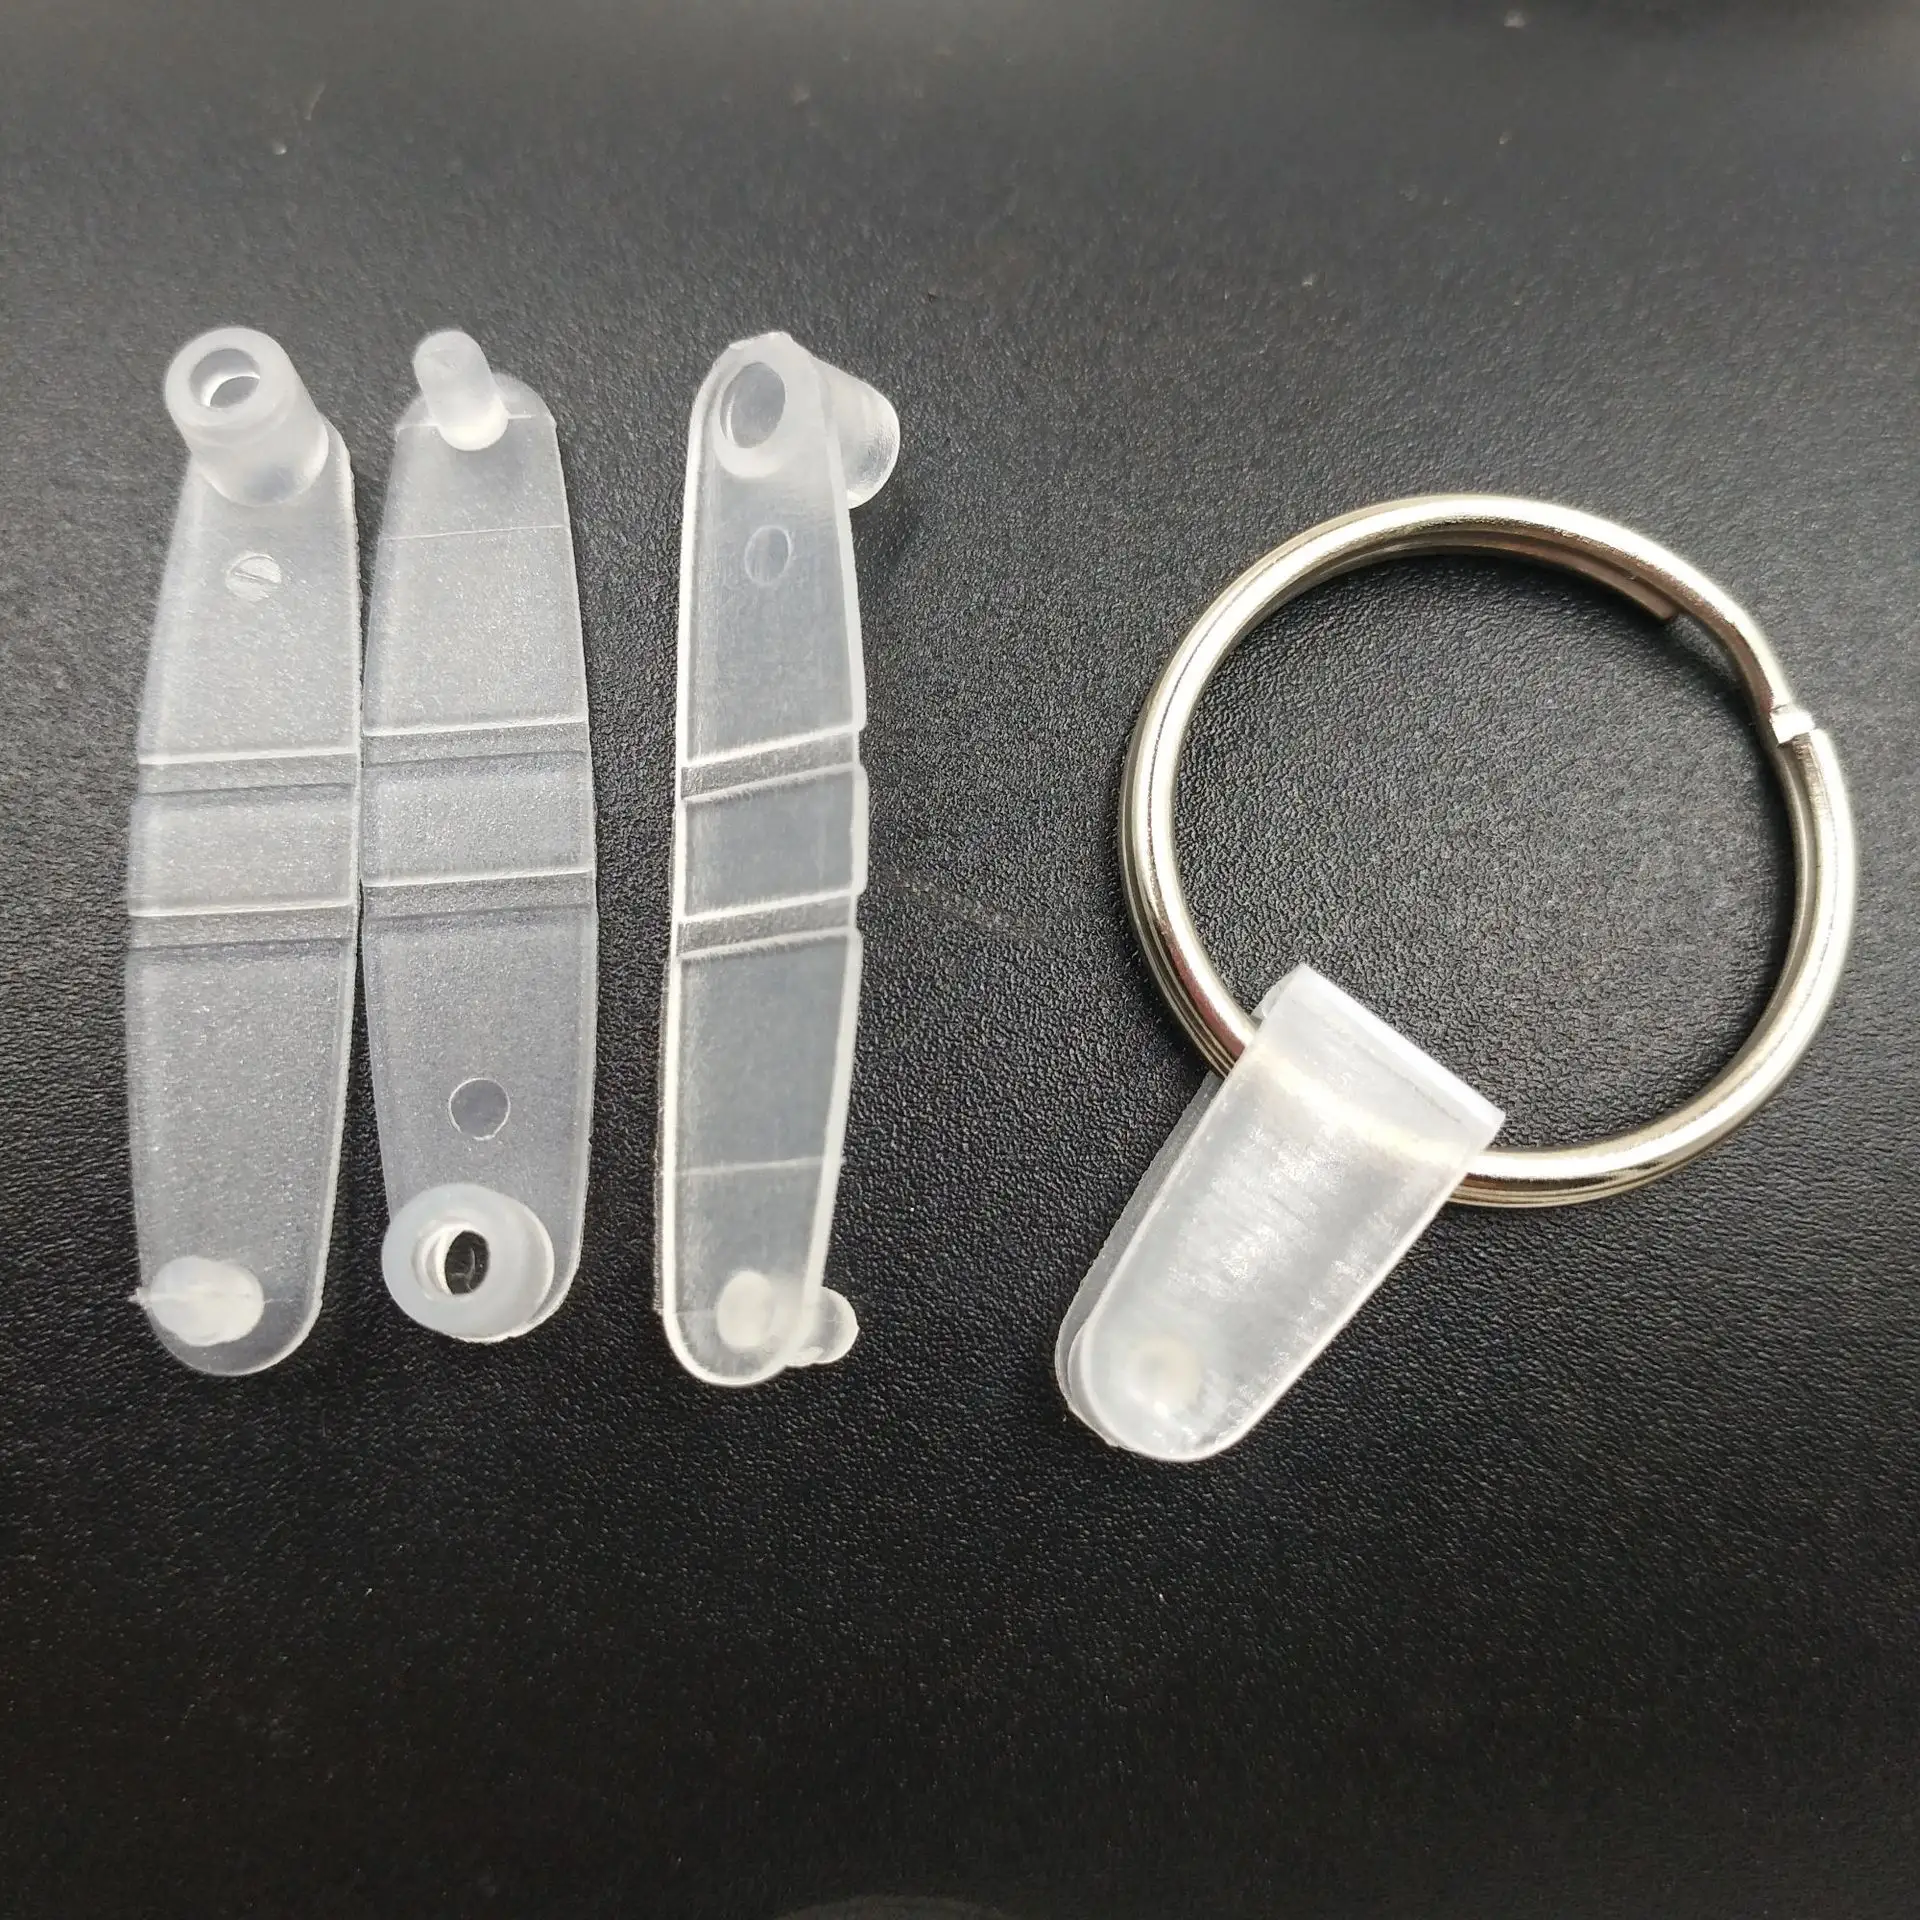 キーホルダー金属昇華キーホルダーアクセサリープラスチックキーホルダーコネクタクリップスプリット透明PPプラスチッククリップボタンキーリング